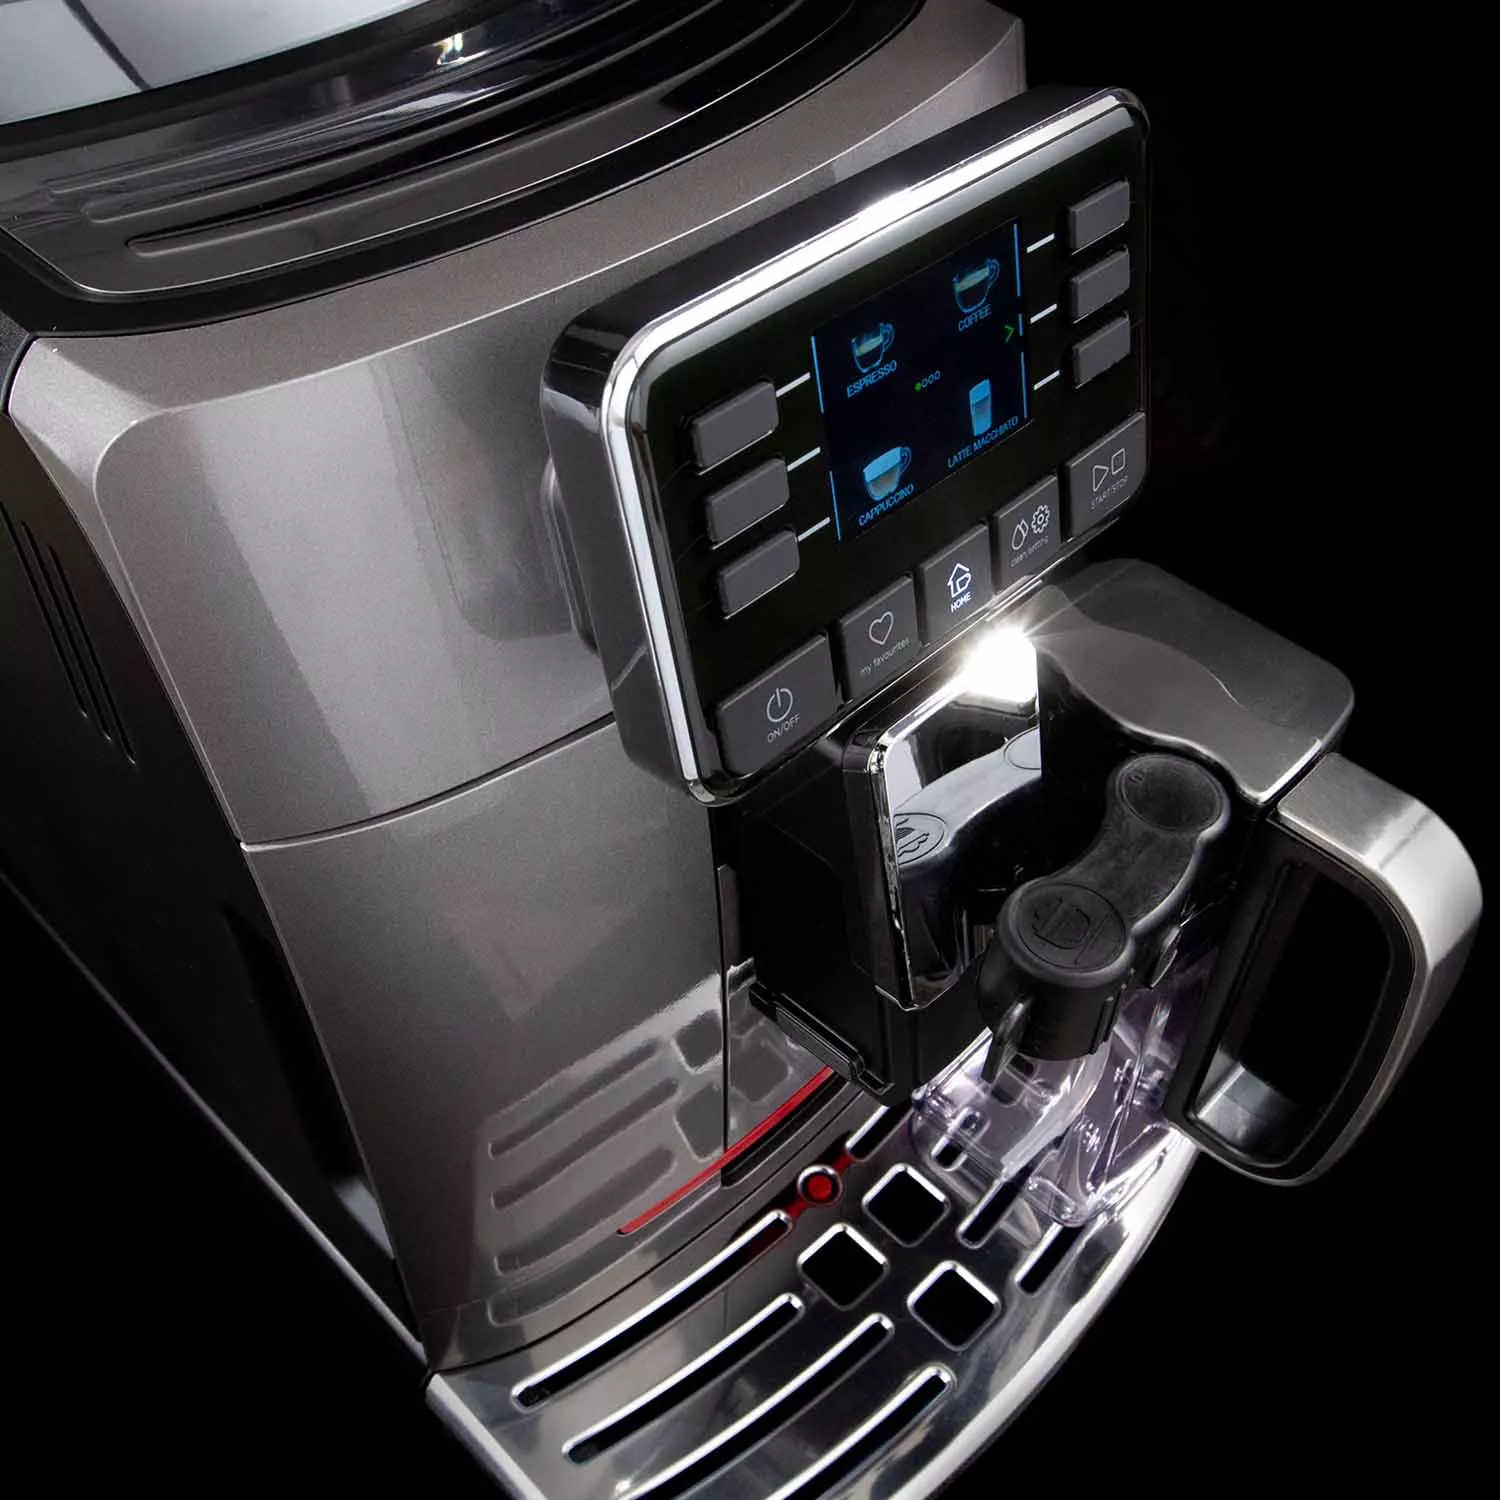 Gaggia Cadorna Prestige Super-Automatic Espresso Machine